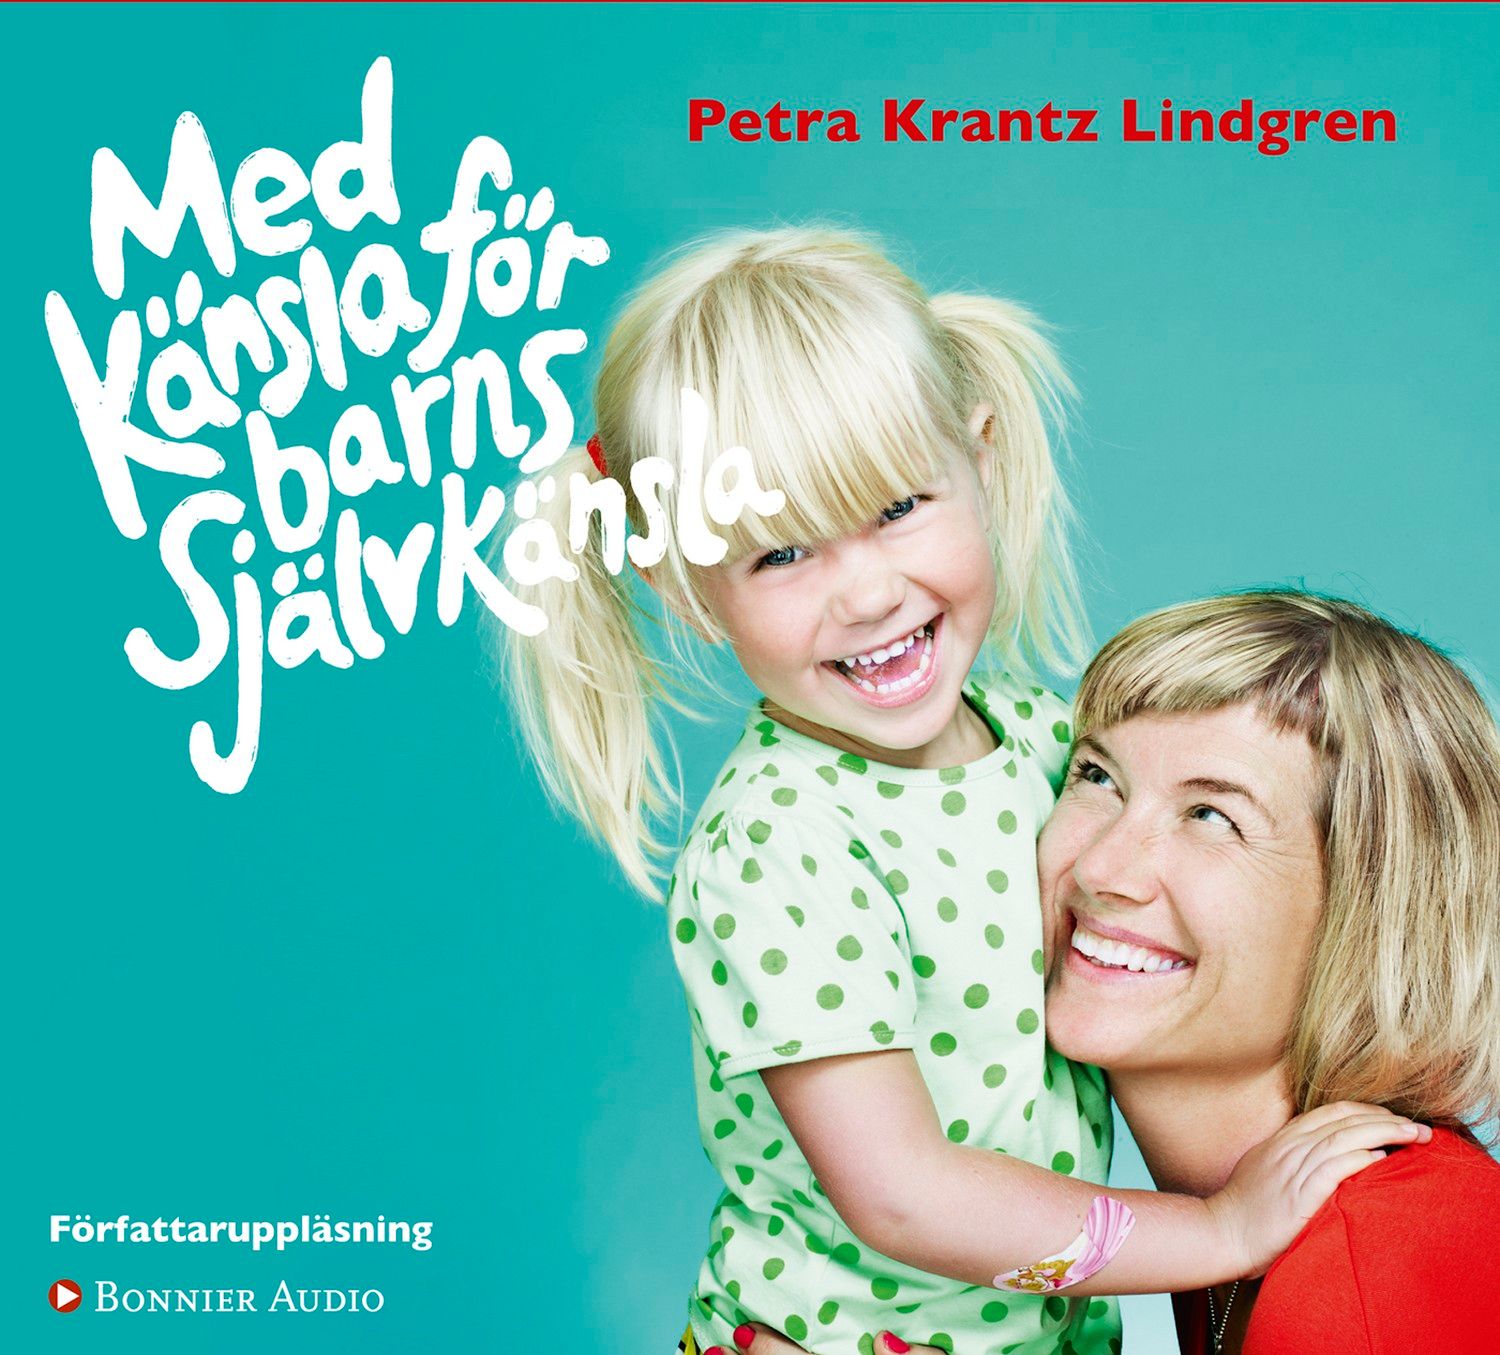 Med känsla för barns självkänsla, ljudbok av Petra Krantz Lindgren